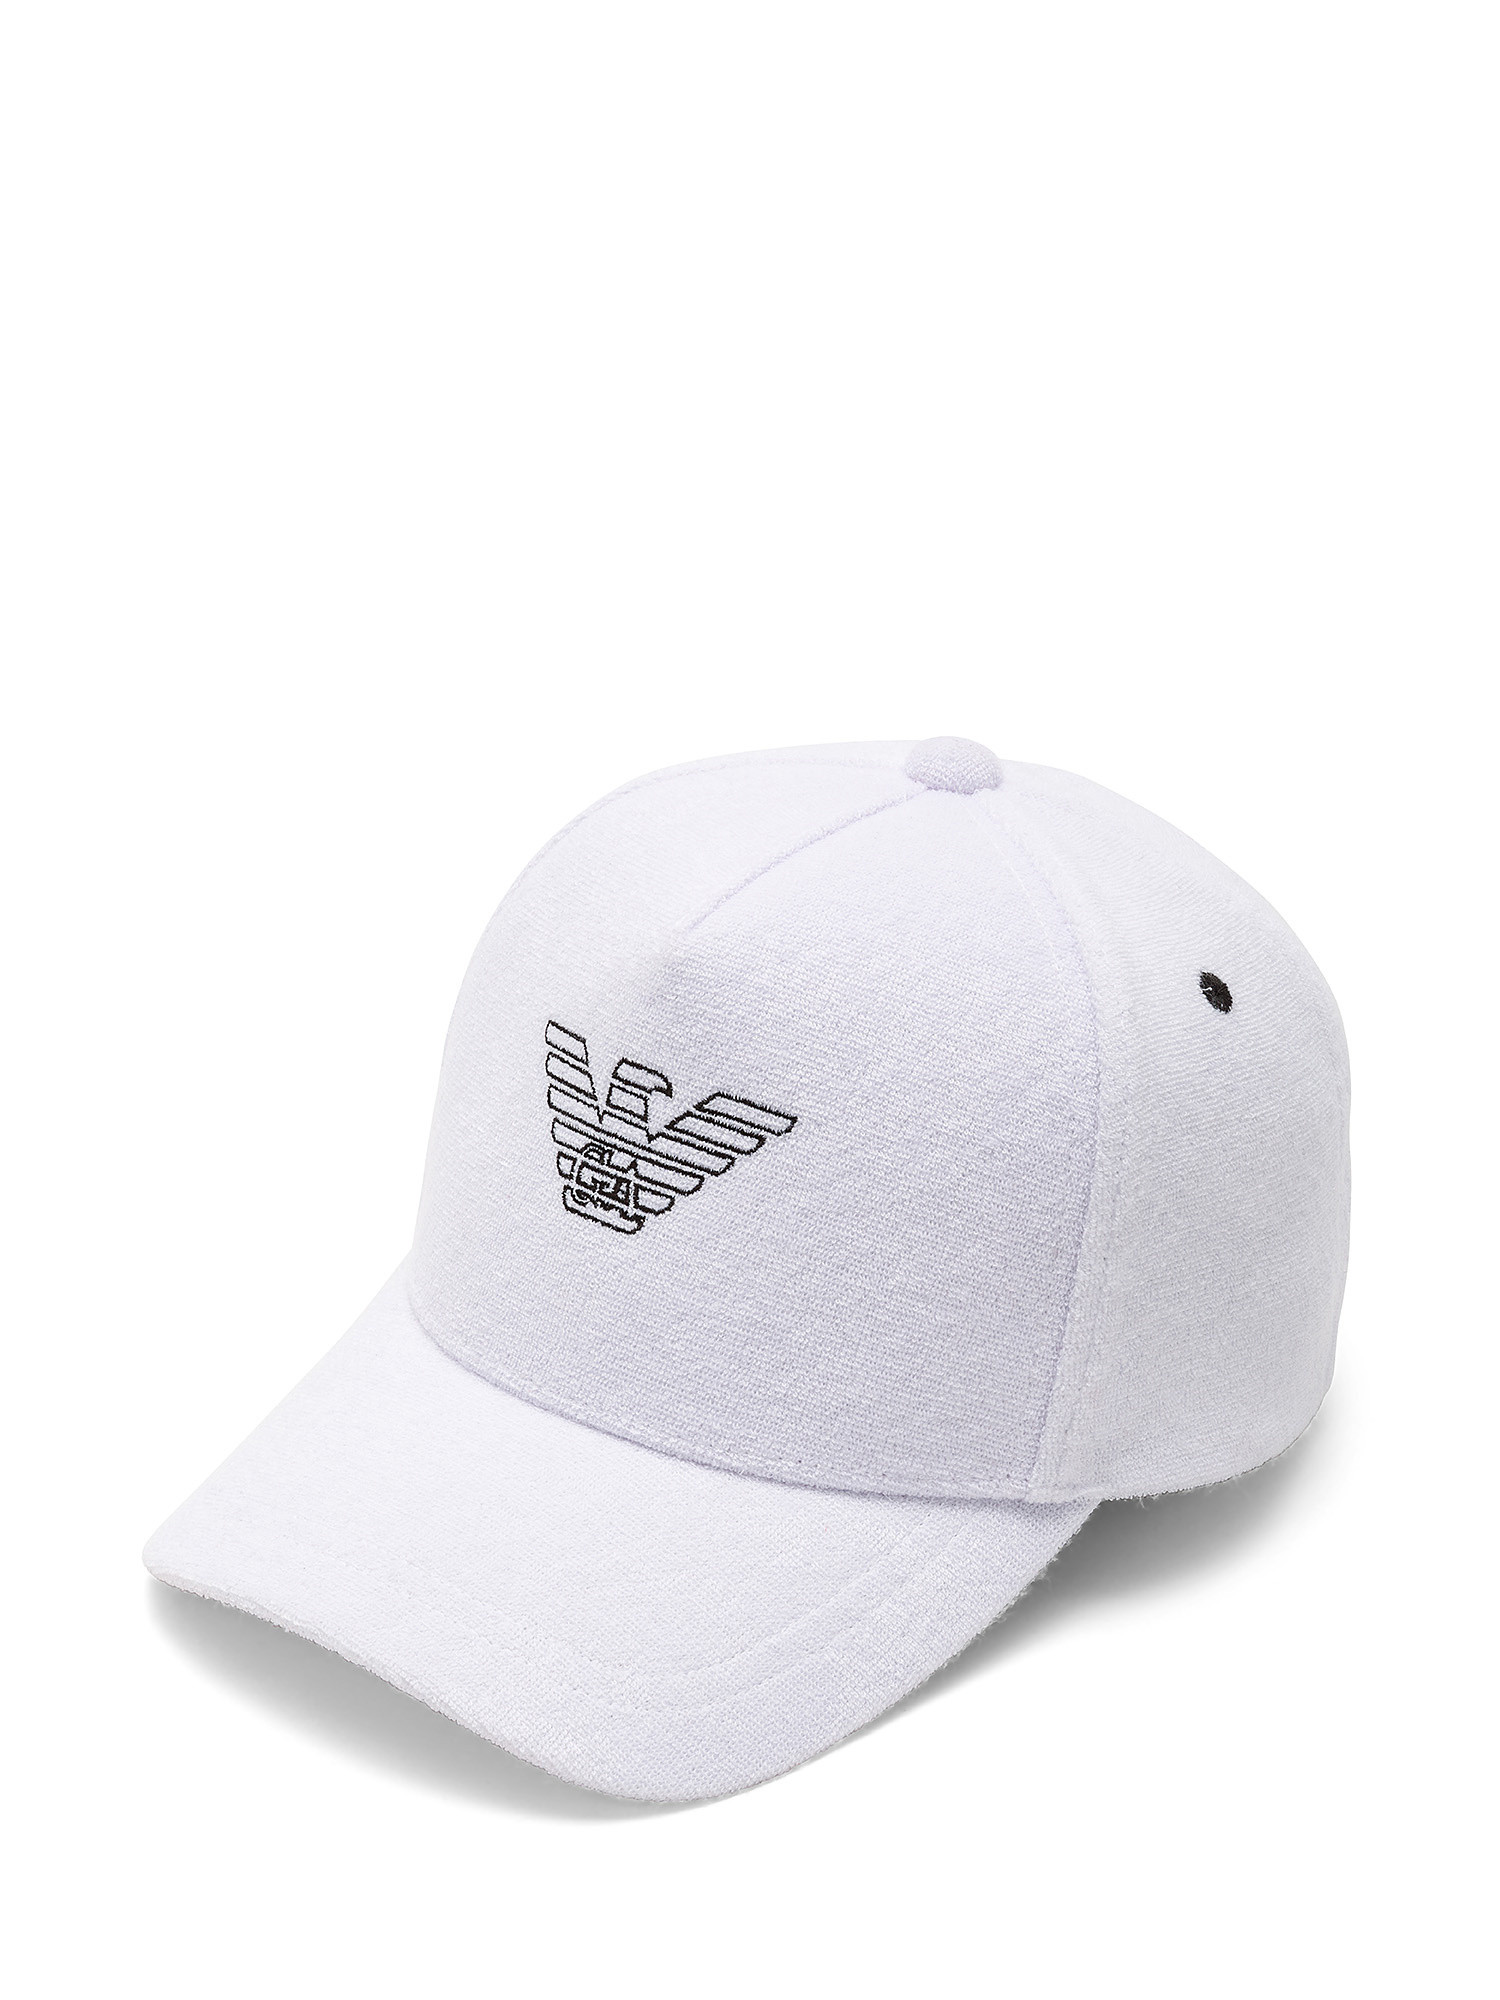 Baseball cap with eagle logo, White, large image number 0